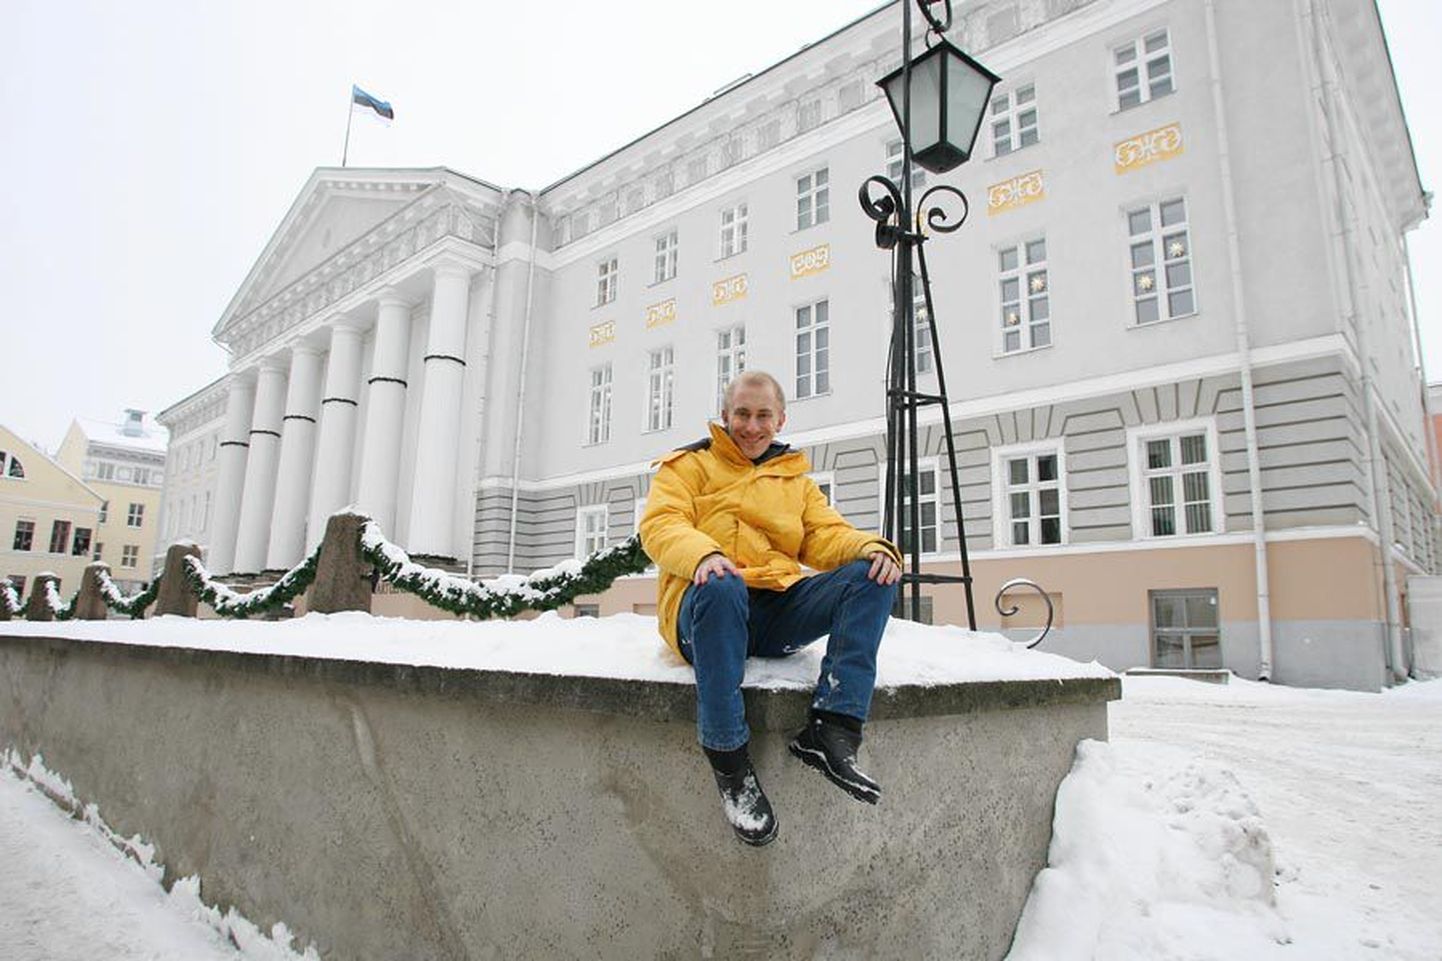 David Ogren lõbusas talvemeeleolus Tartu ülikooli peahoone ees. Ta loodab, et jääb selle kooliga seotuks veel paljudeks aastateks.